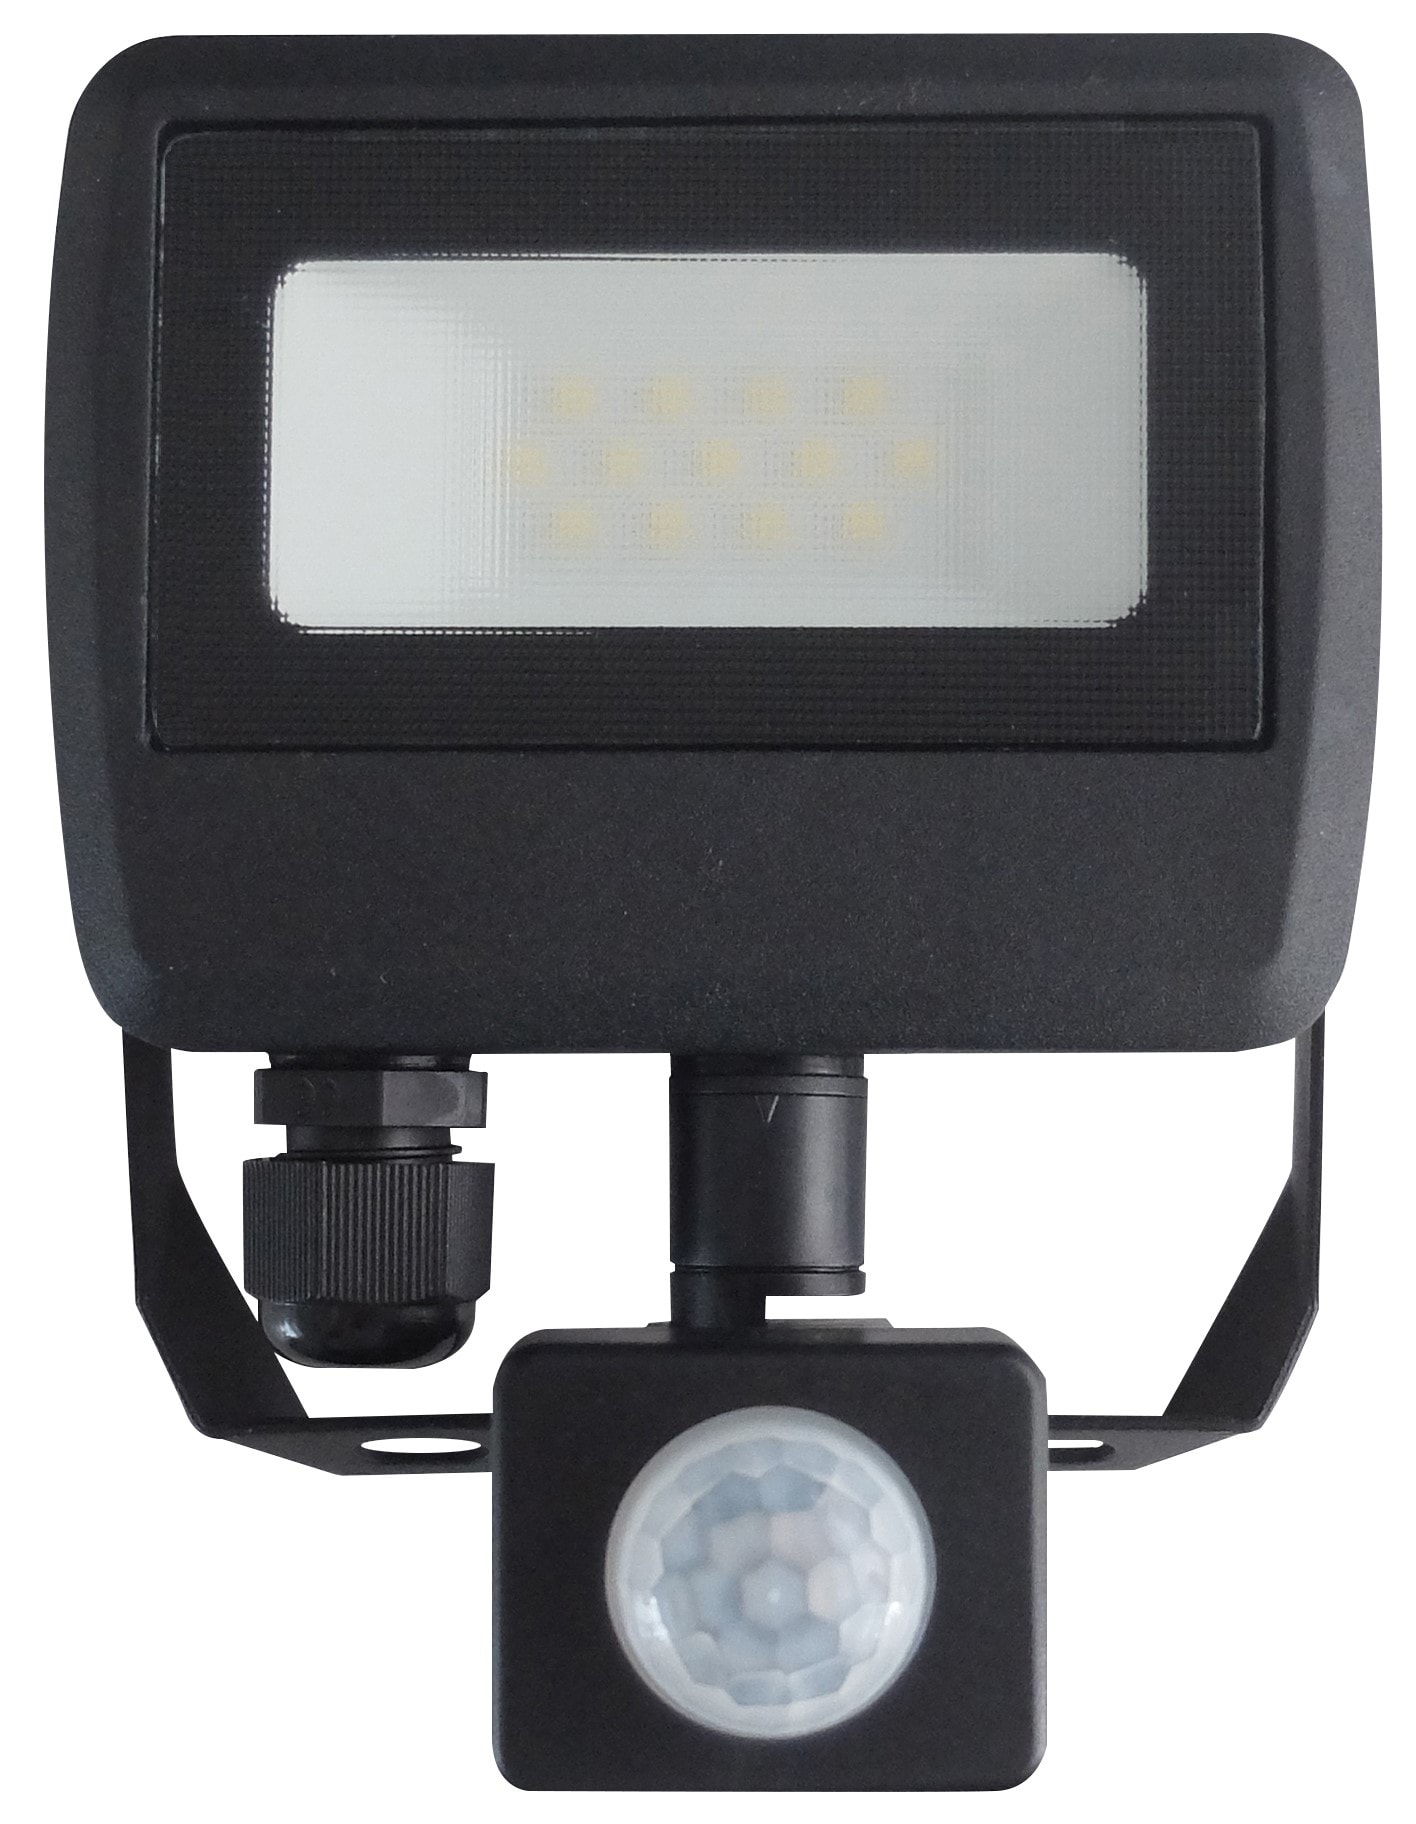 Projecteur LED extérieur detecteur étanche IP65 - 10W